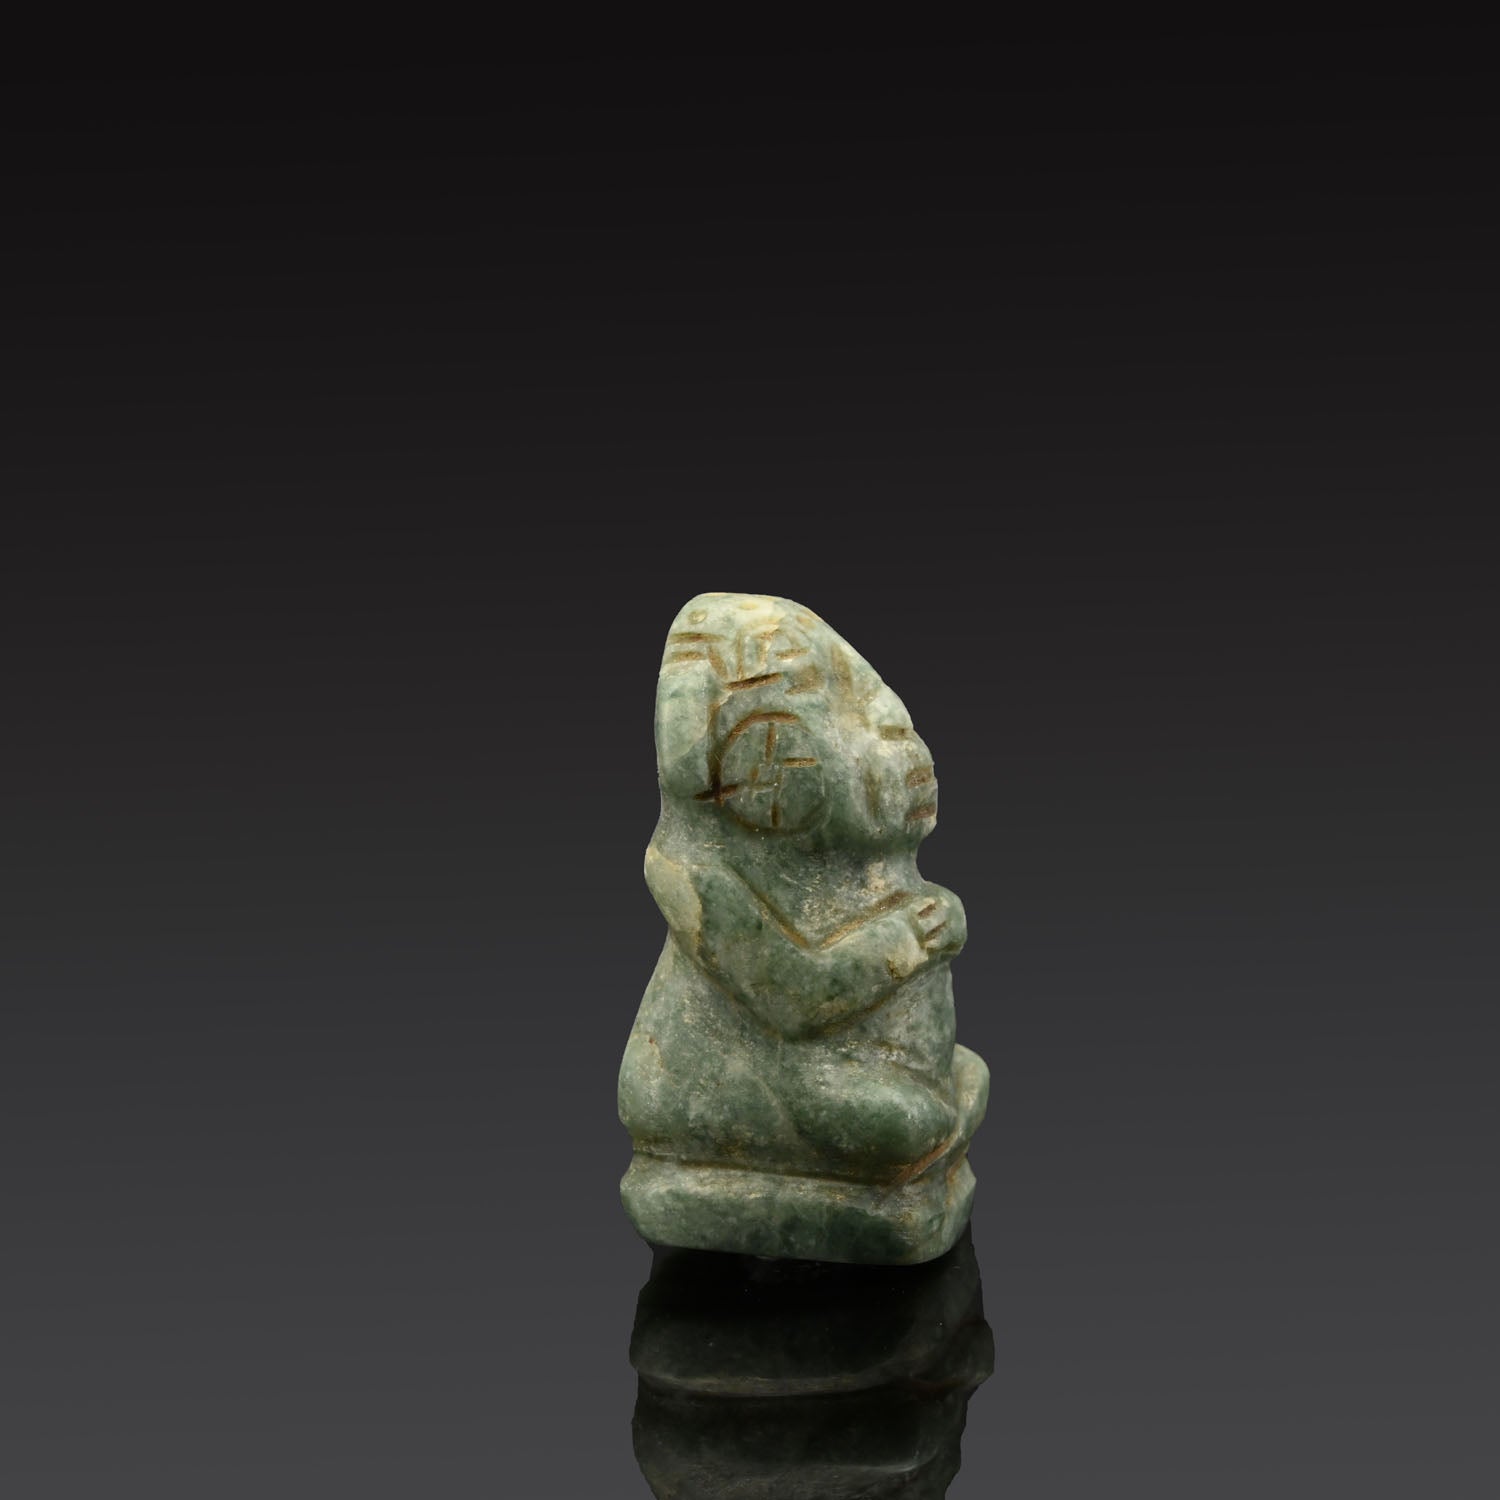 A Seated Mayan Jade Figure, Classic Period, ca. 600 - 1400 CE